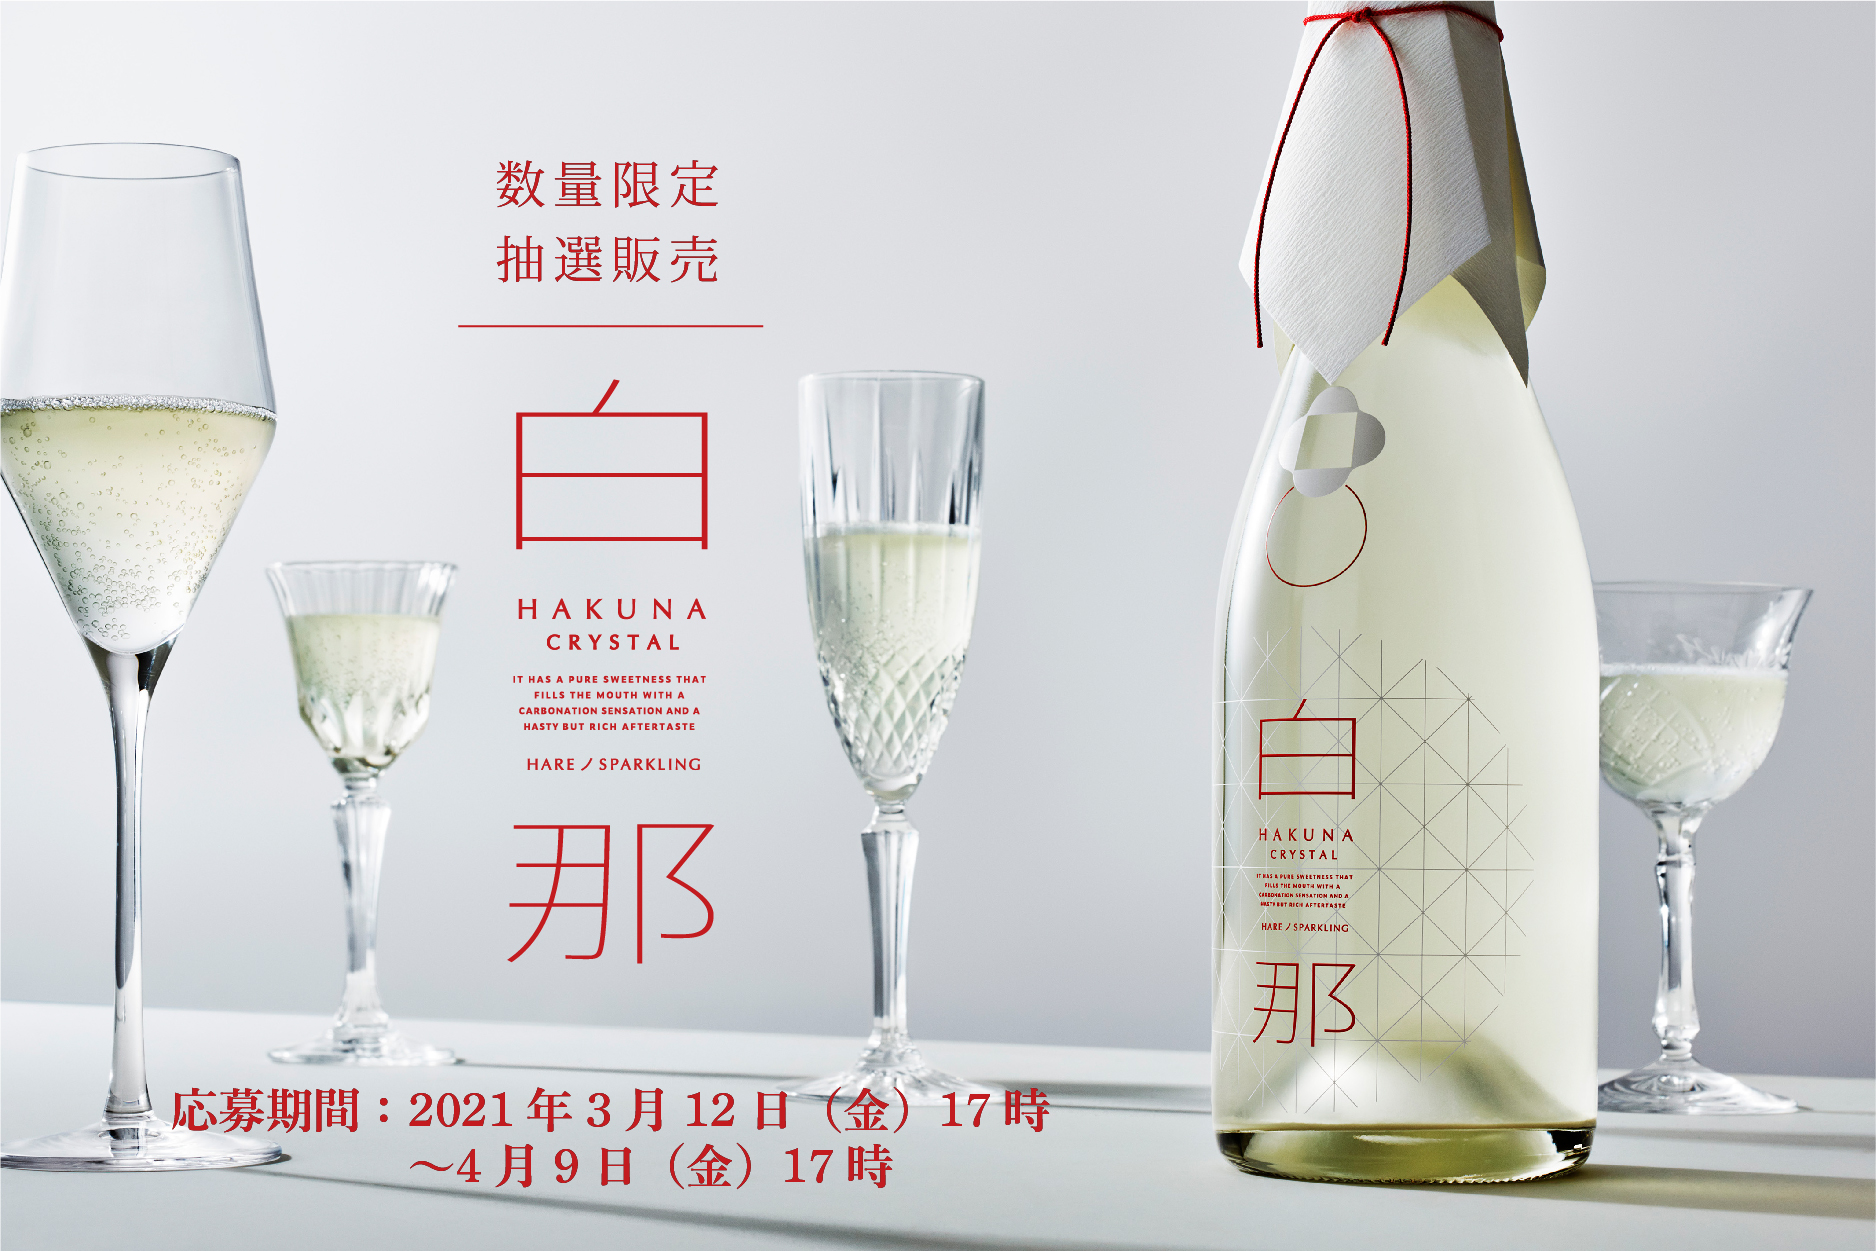 数量限定 ハレを彩る最高級スパークリング日本酒 白那 Crystal 3 12より抽選販売開始 お酒のオンラインストア Kurand のプレスリリース